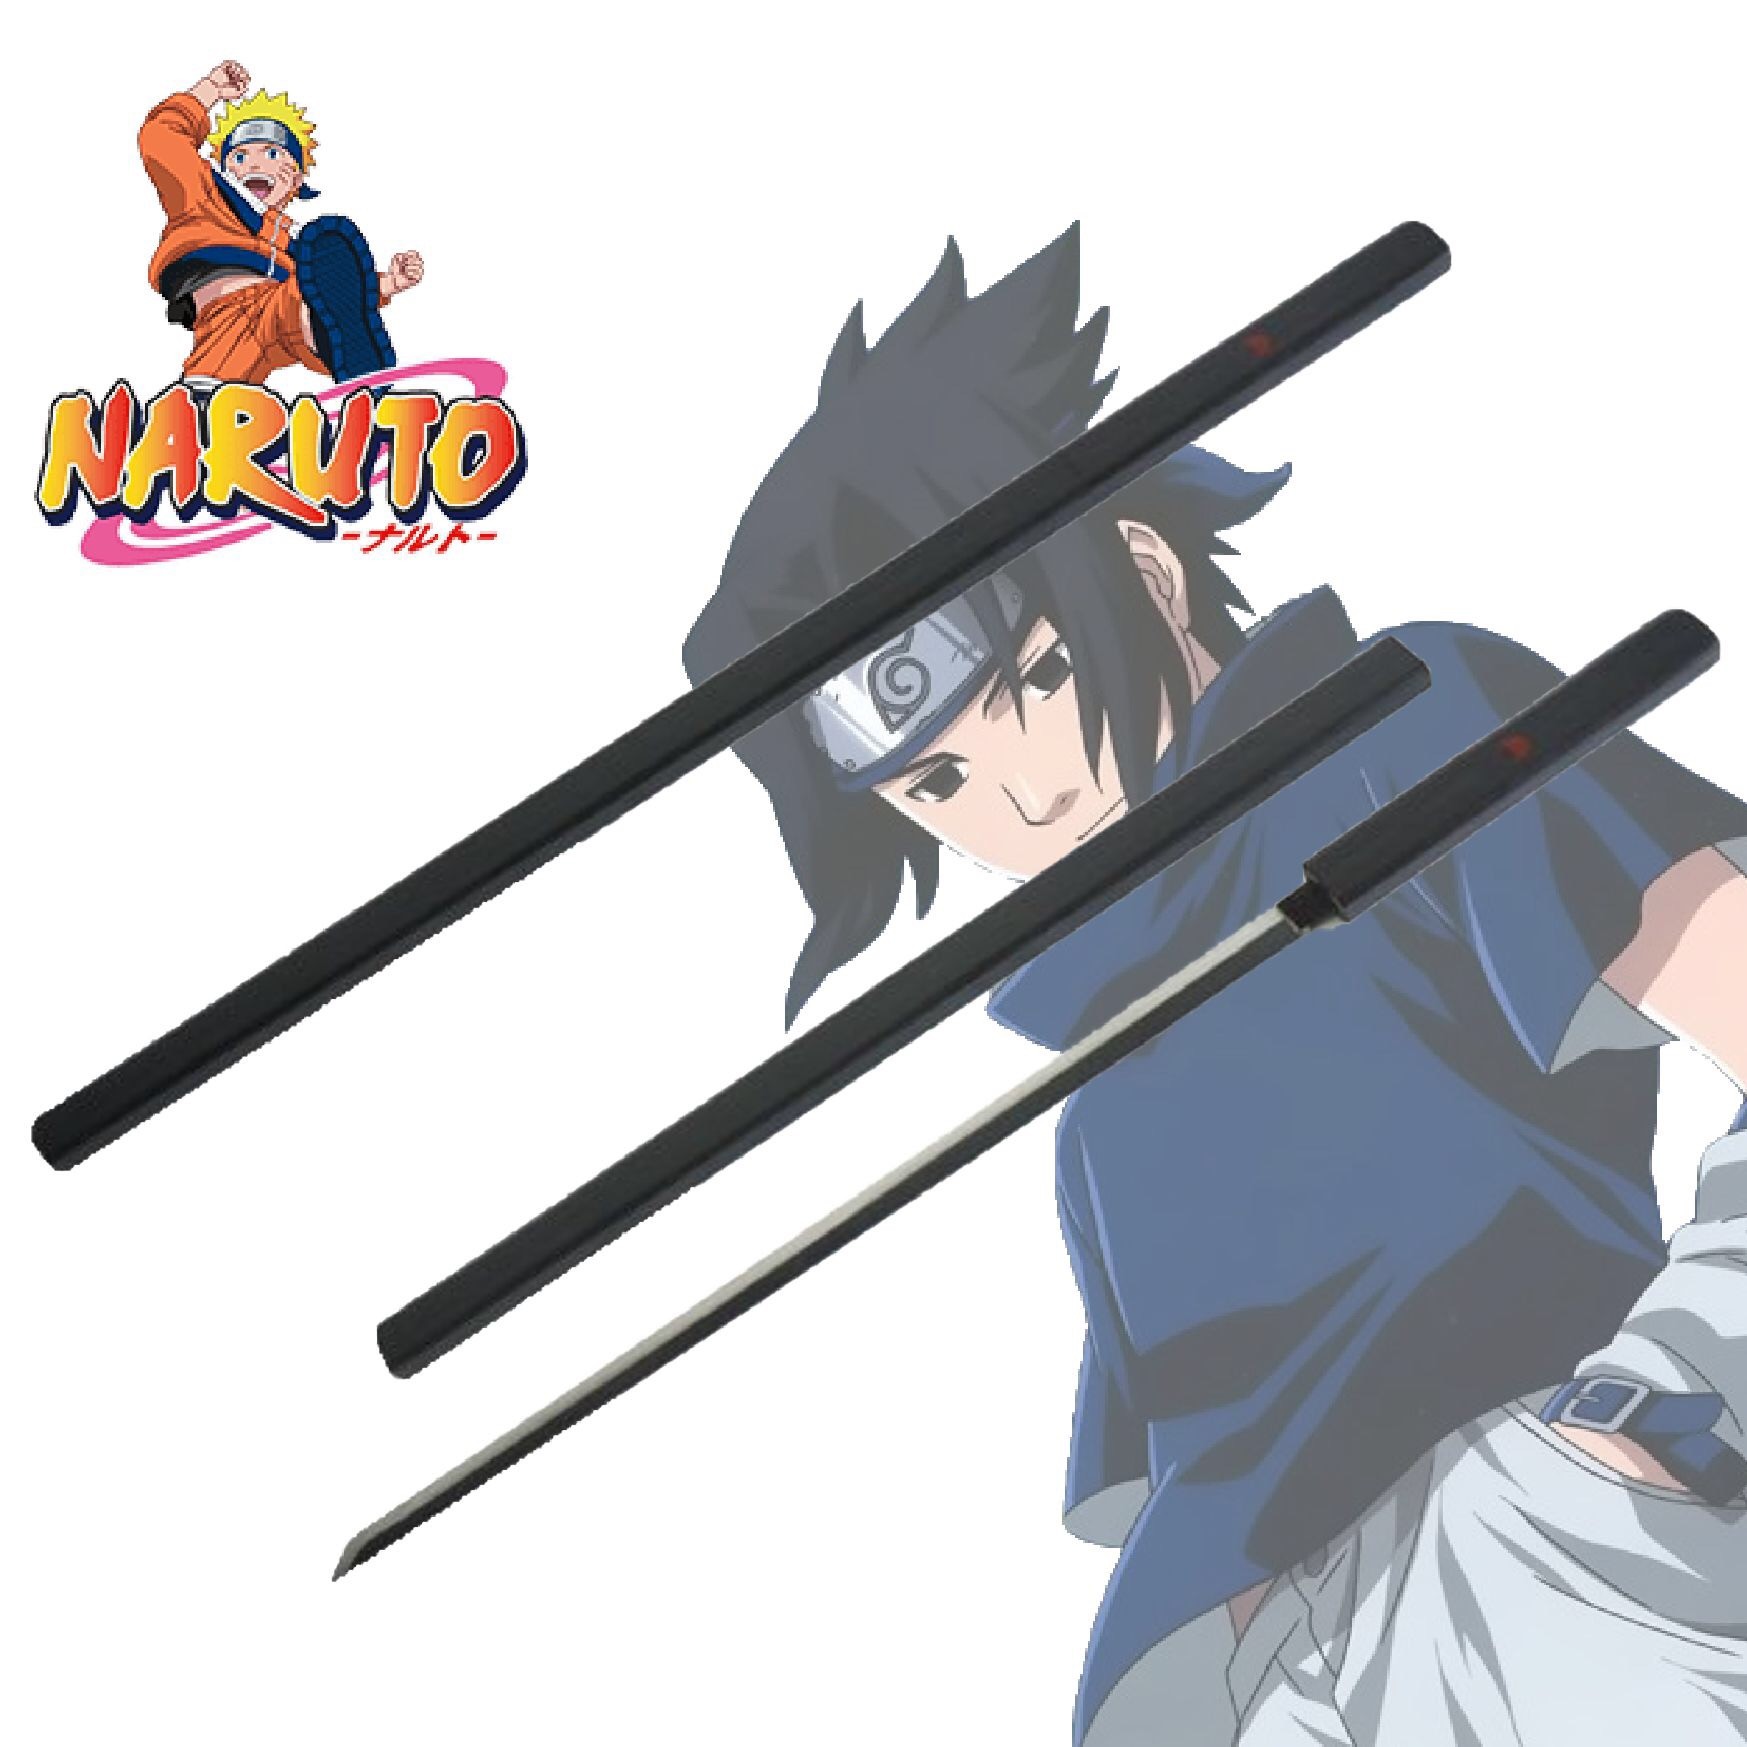 L'incontournable épée #sasuke #uchiwa - Repliquemangacine